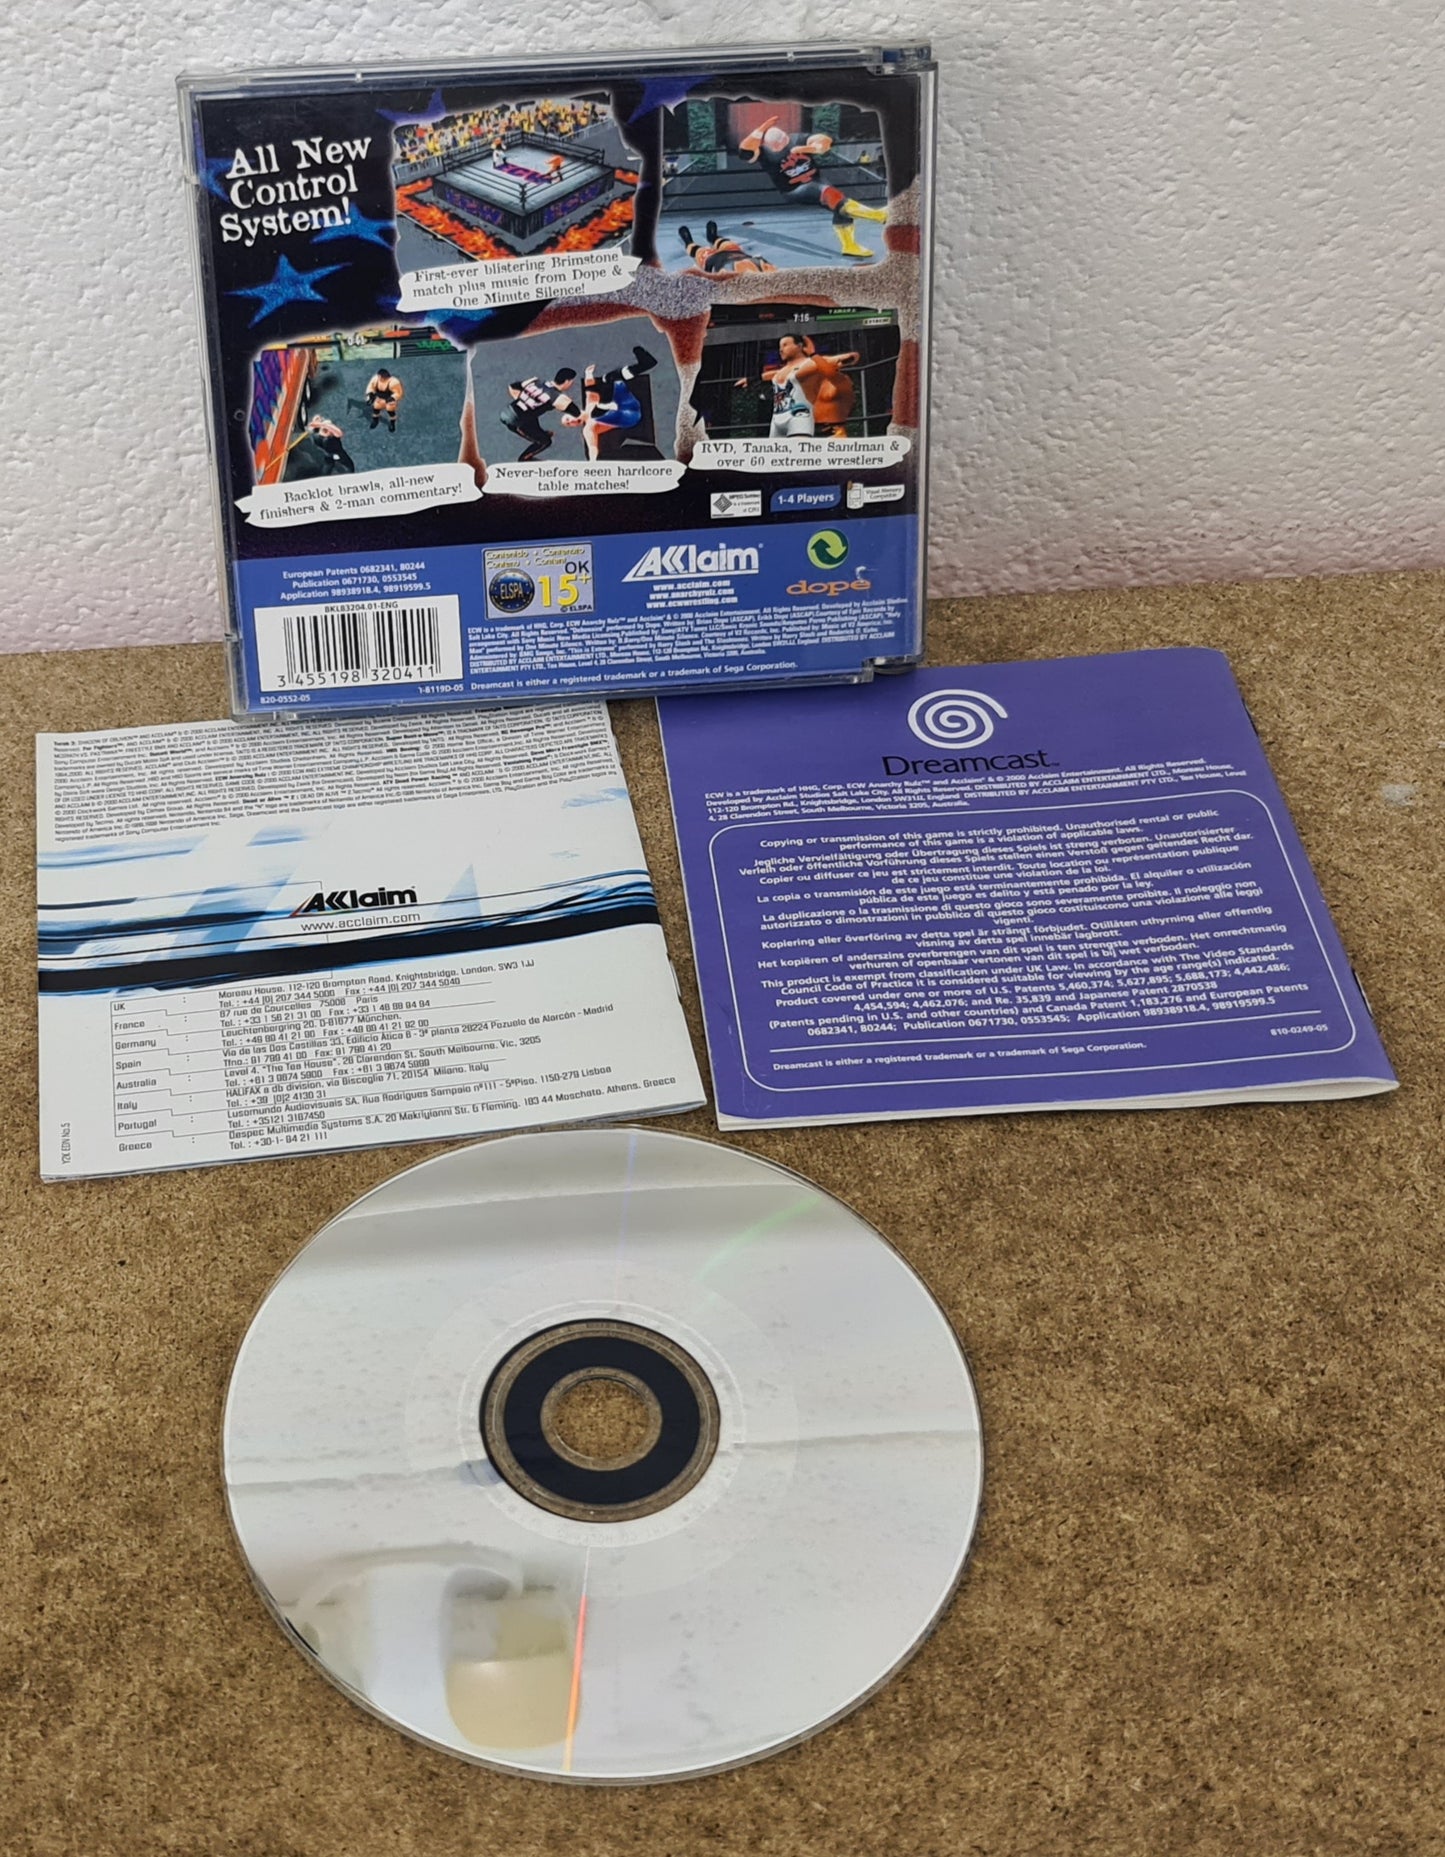 ECW Anarchy Rulz Sega Dreamcast RARE Game